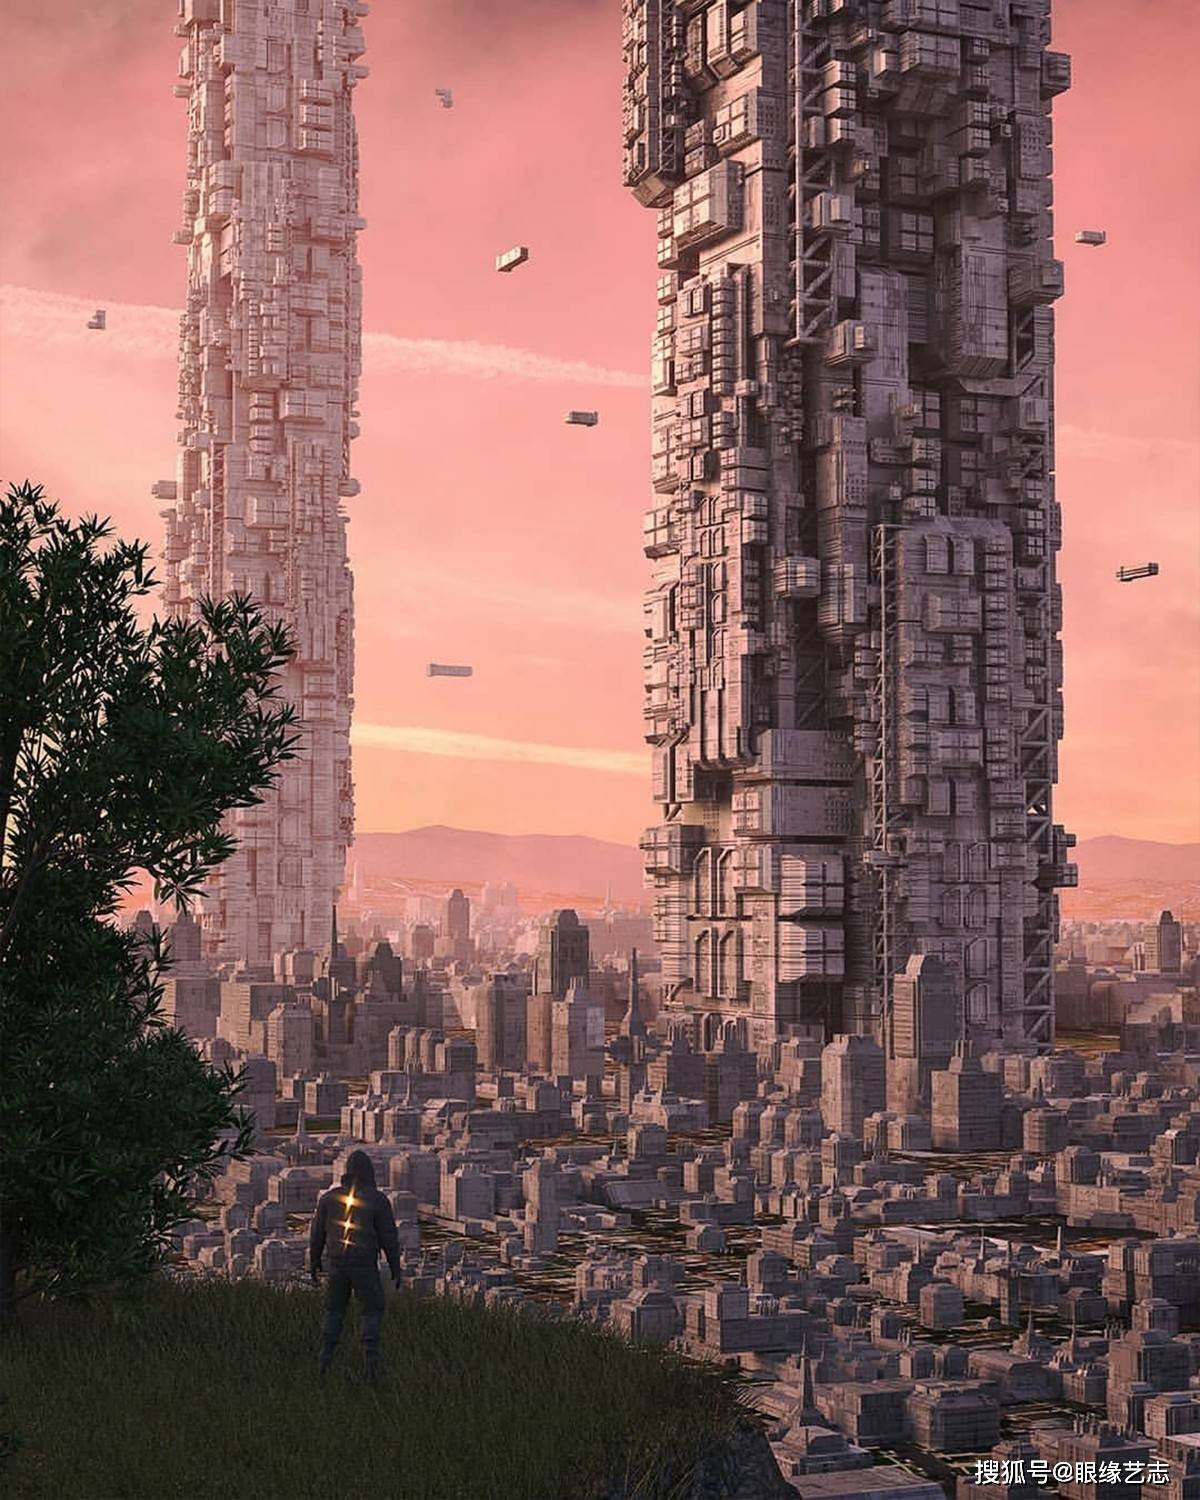 平行宇宙还是未来城市疯狂的3d场景设计虚拟世界的繁华灯火